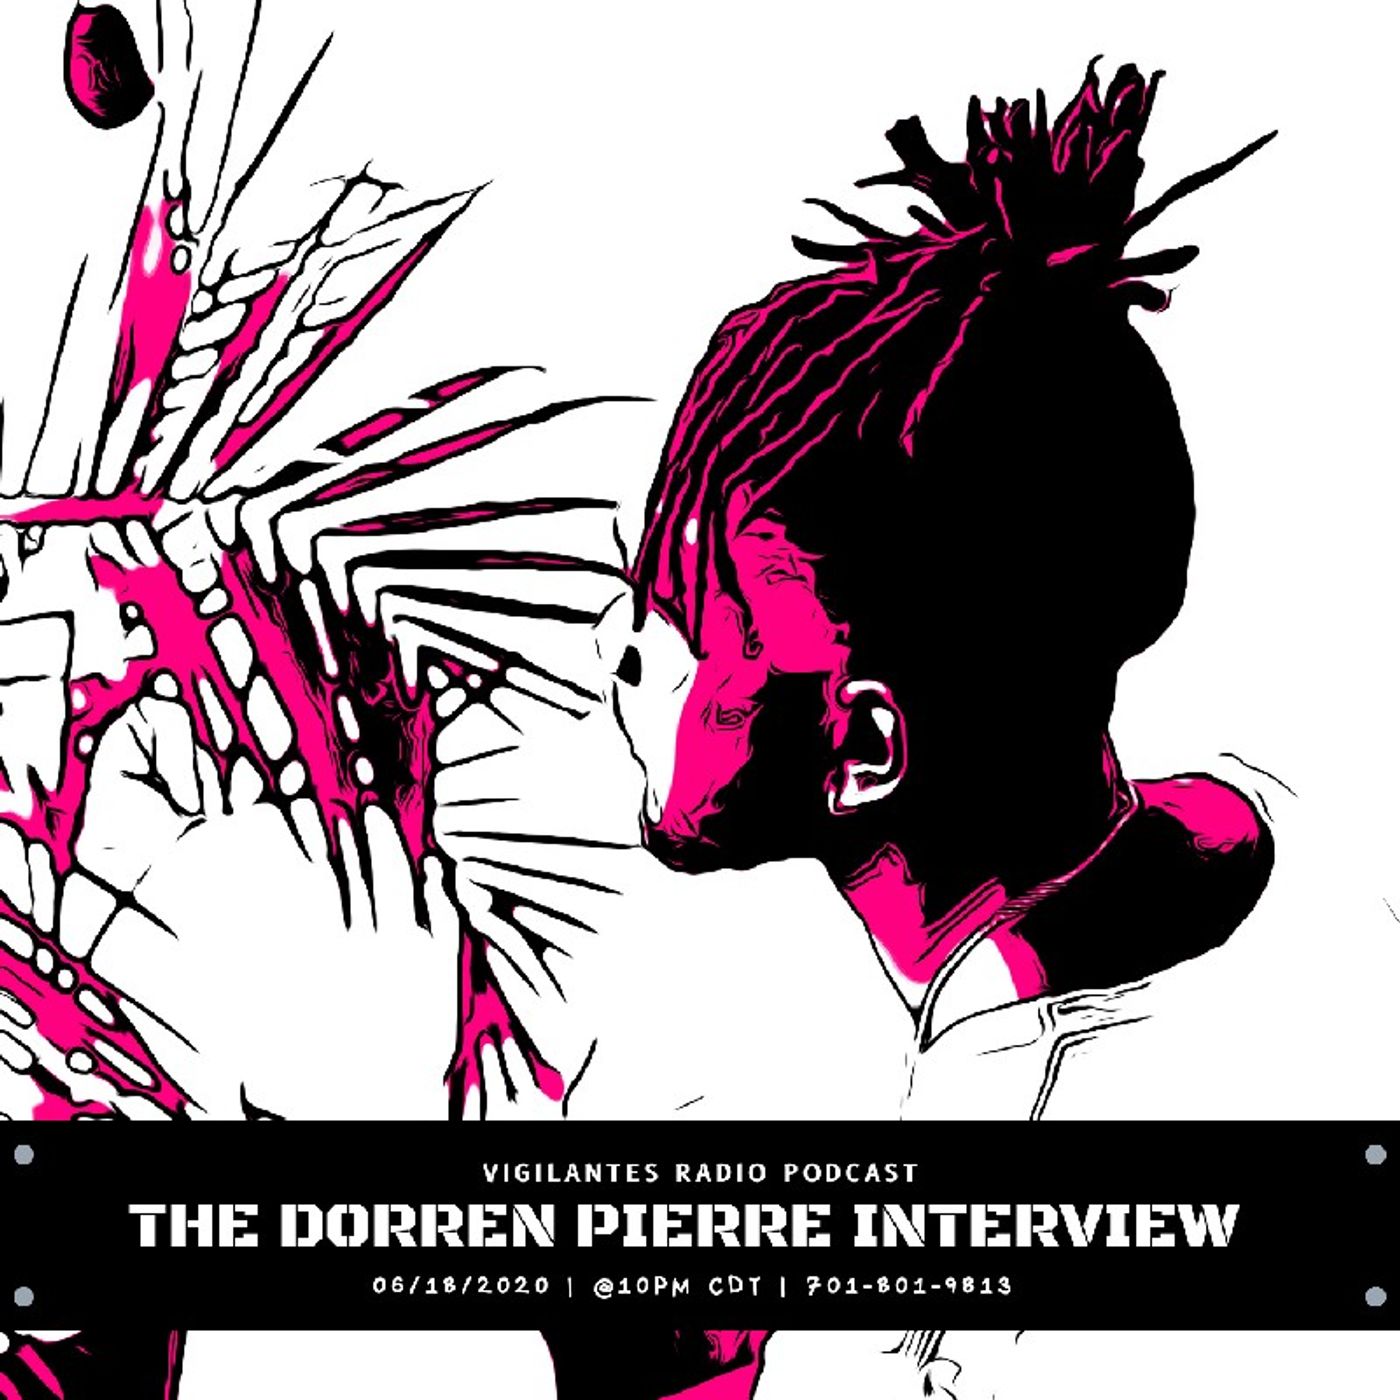 The Dorren Pierre Interview. Image